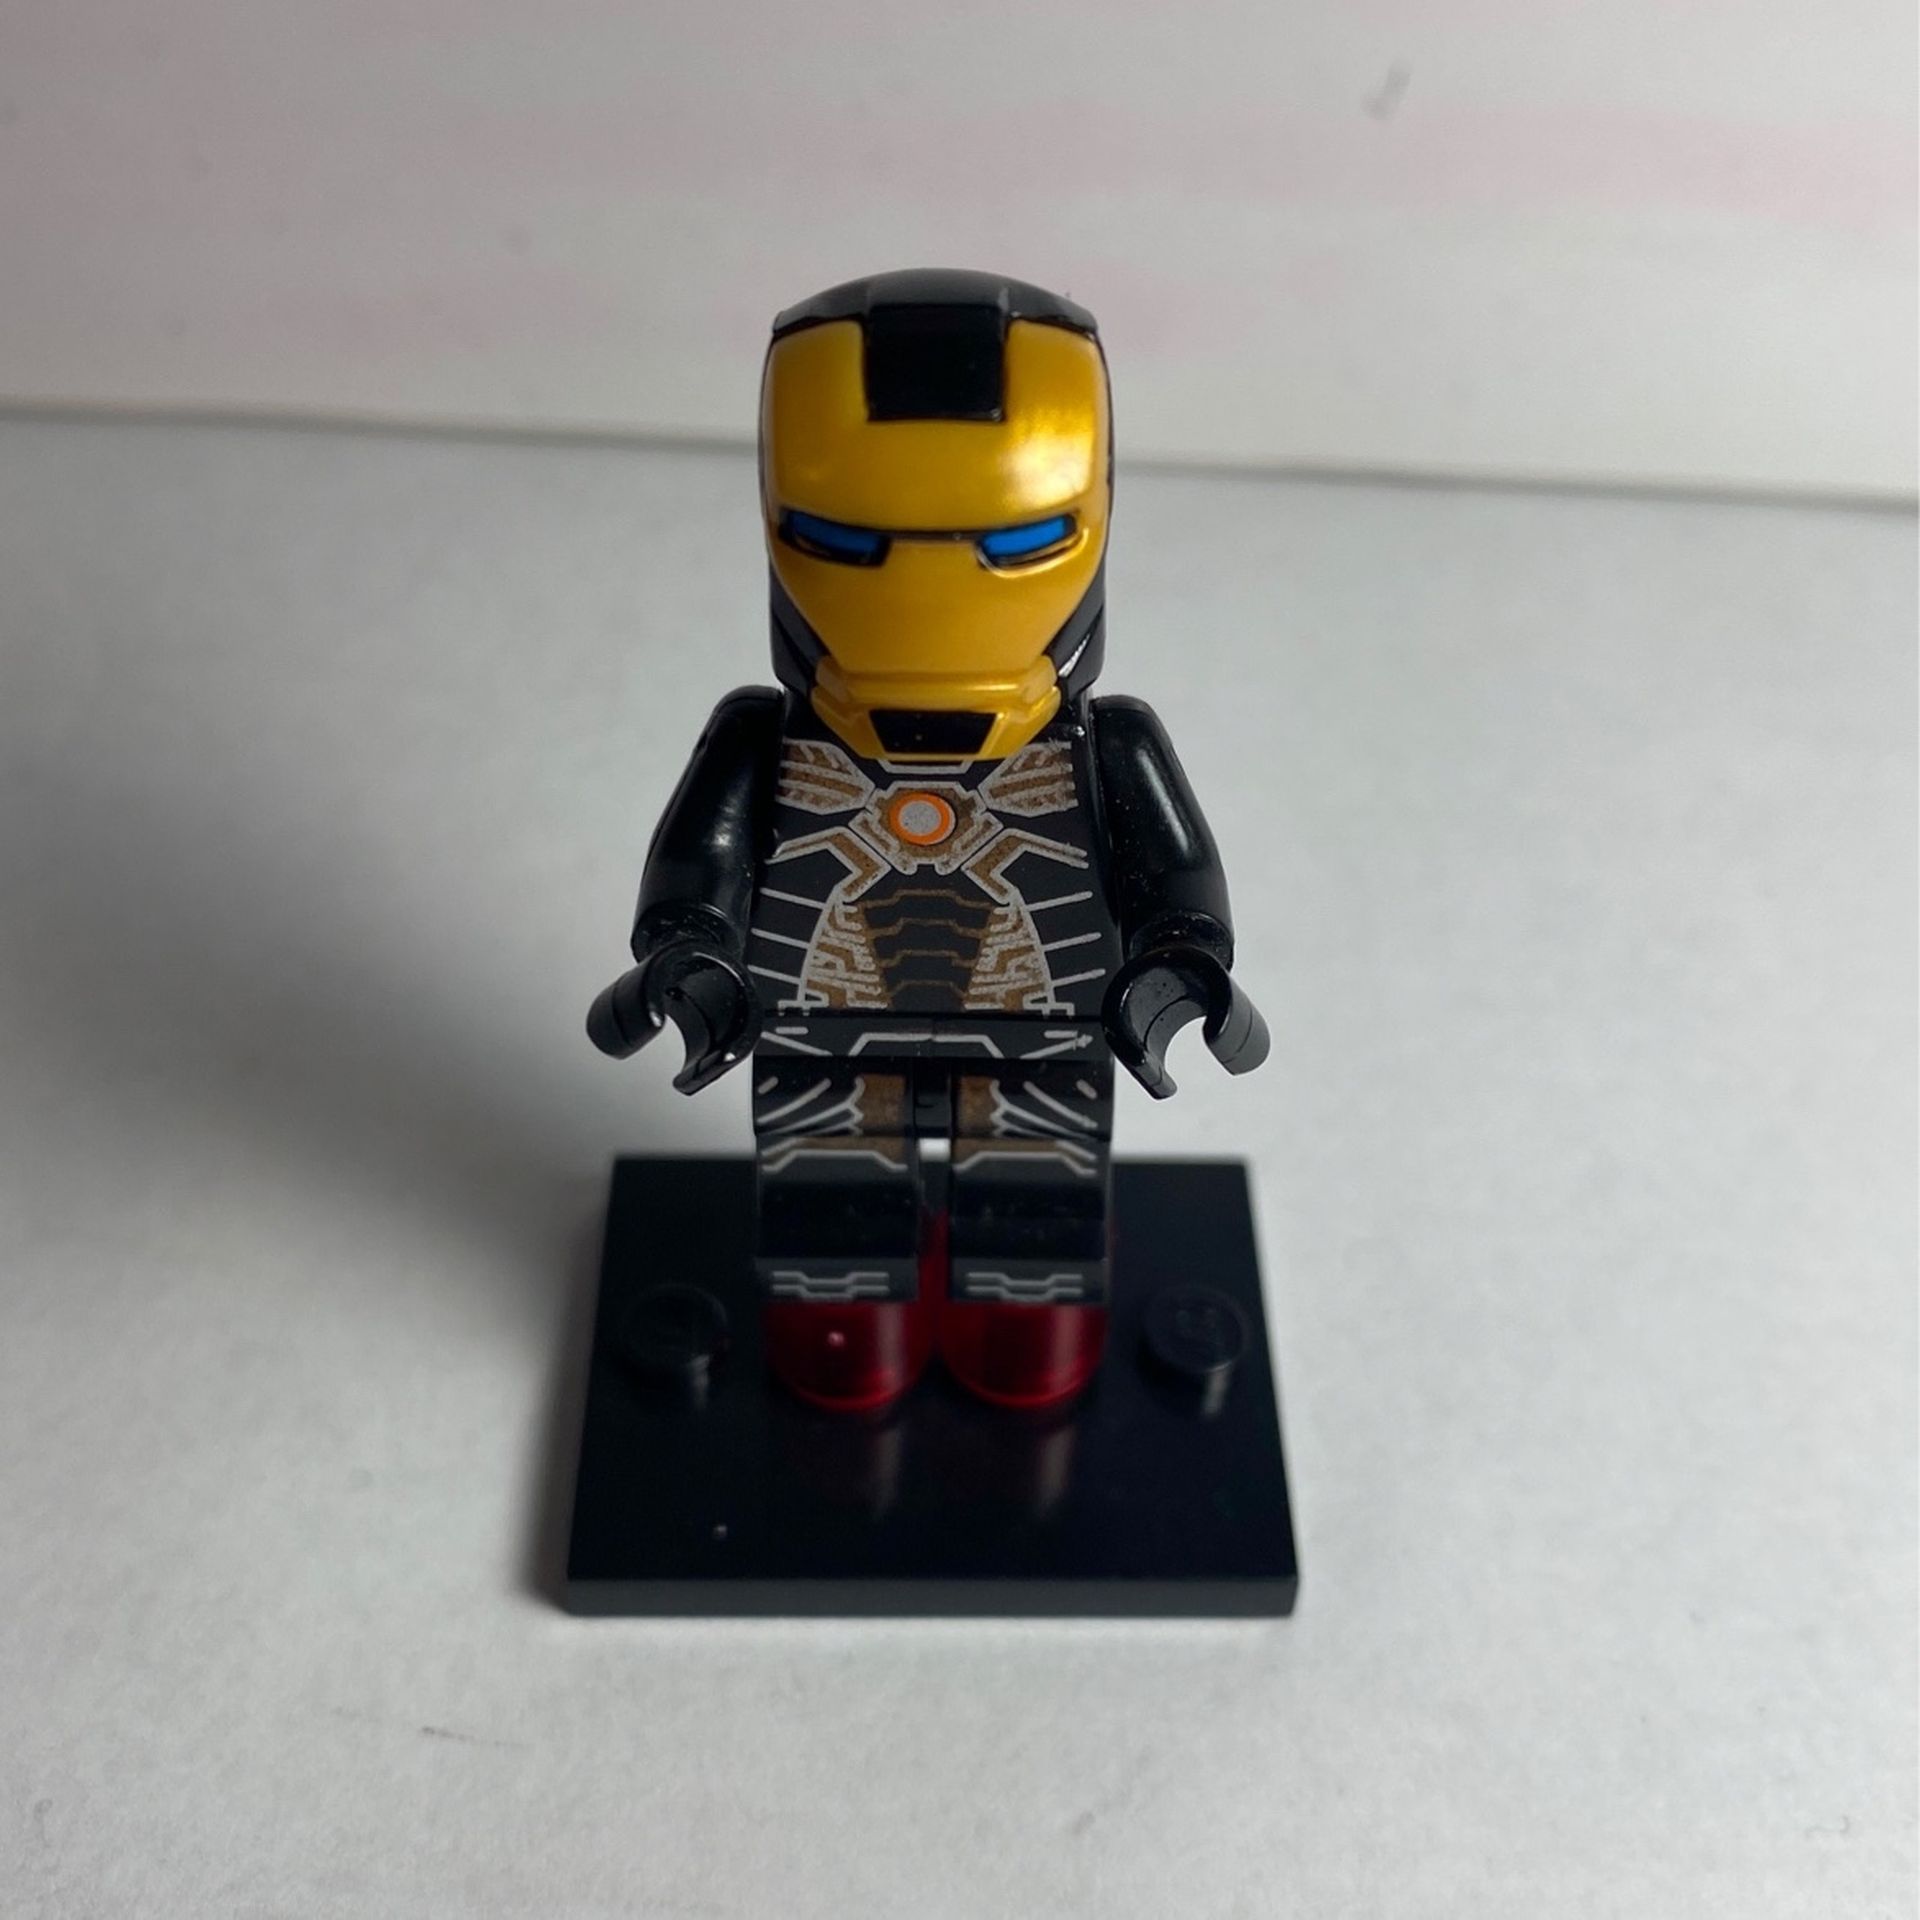 Lego Iron Man (not Lego Brand)